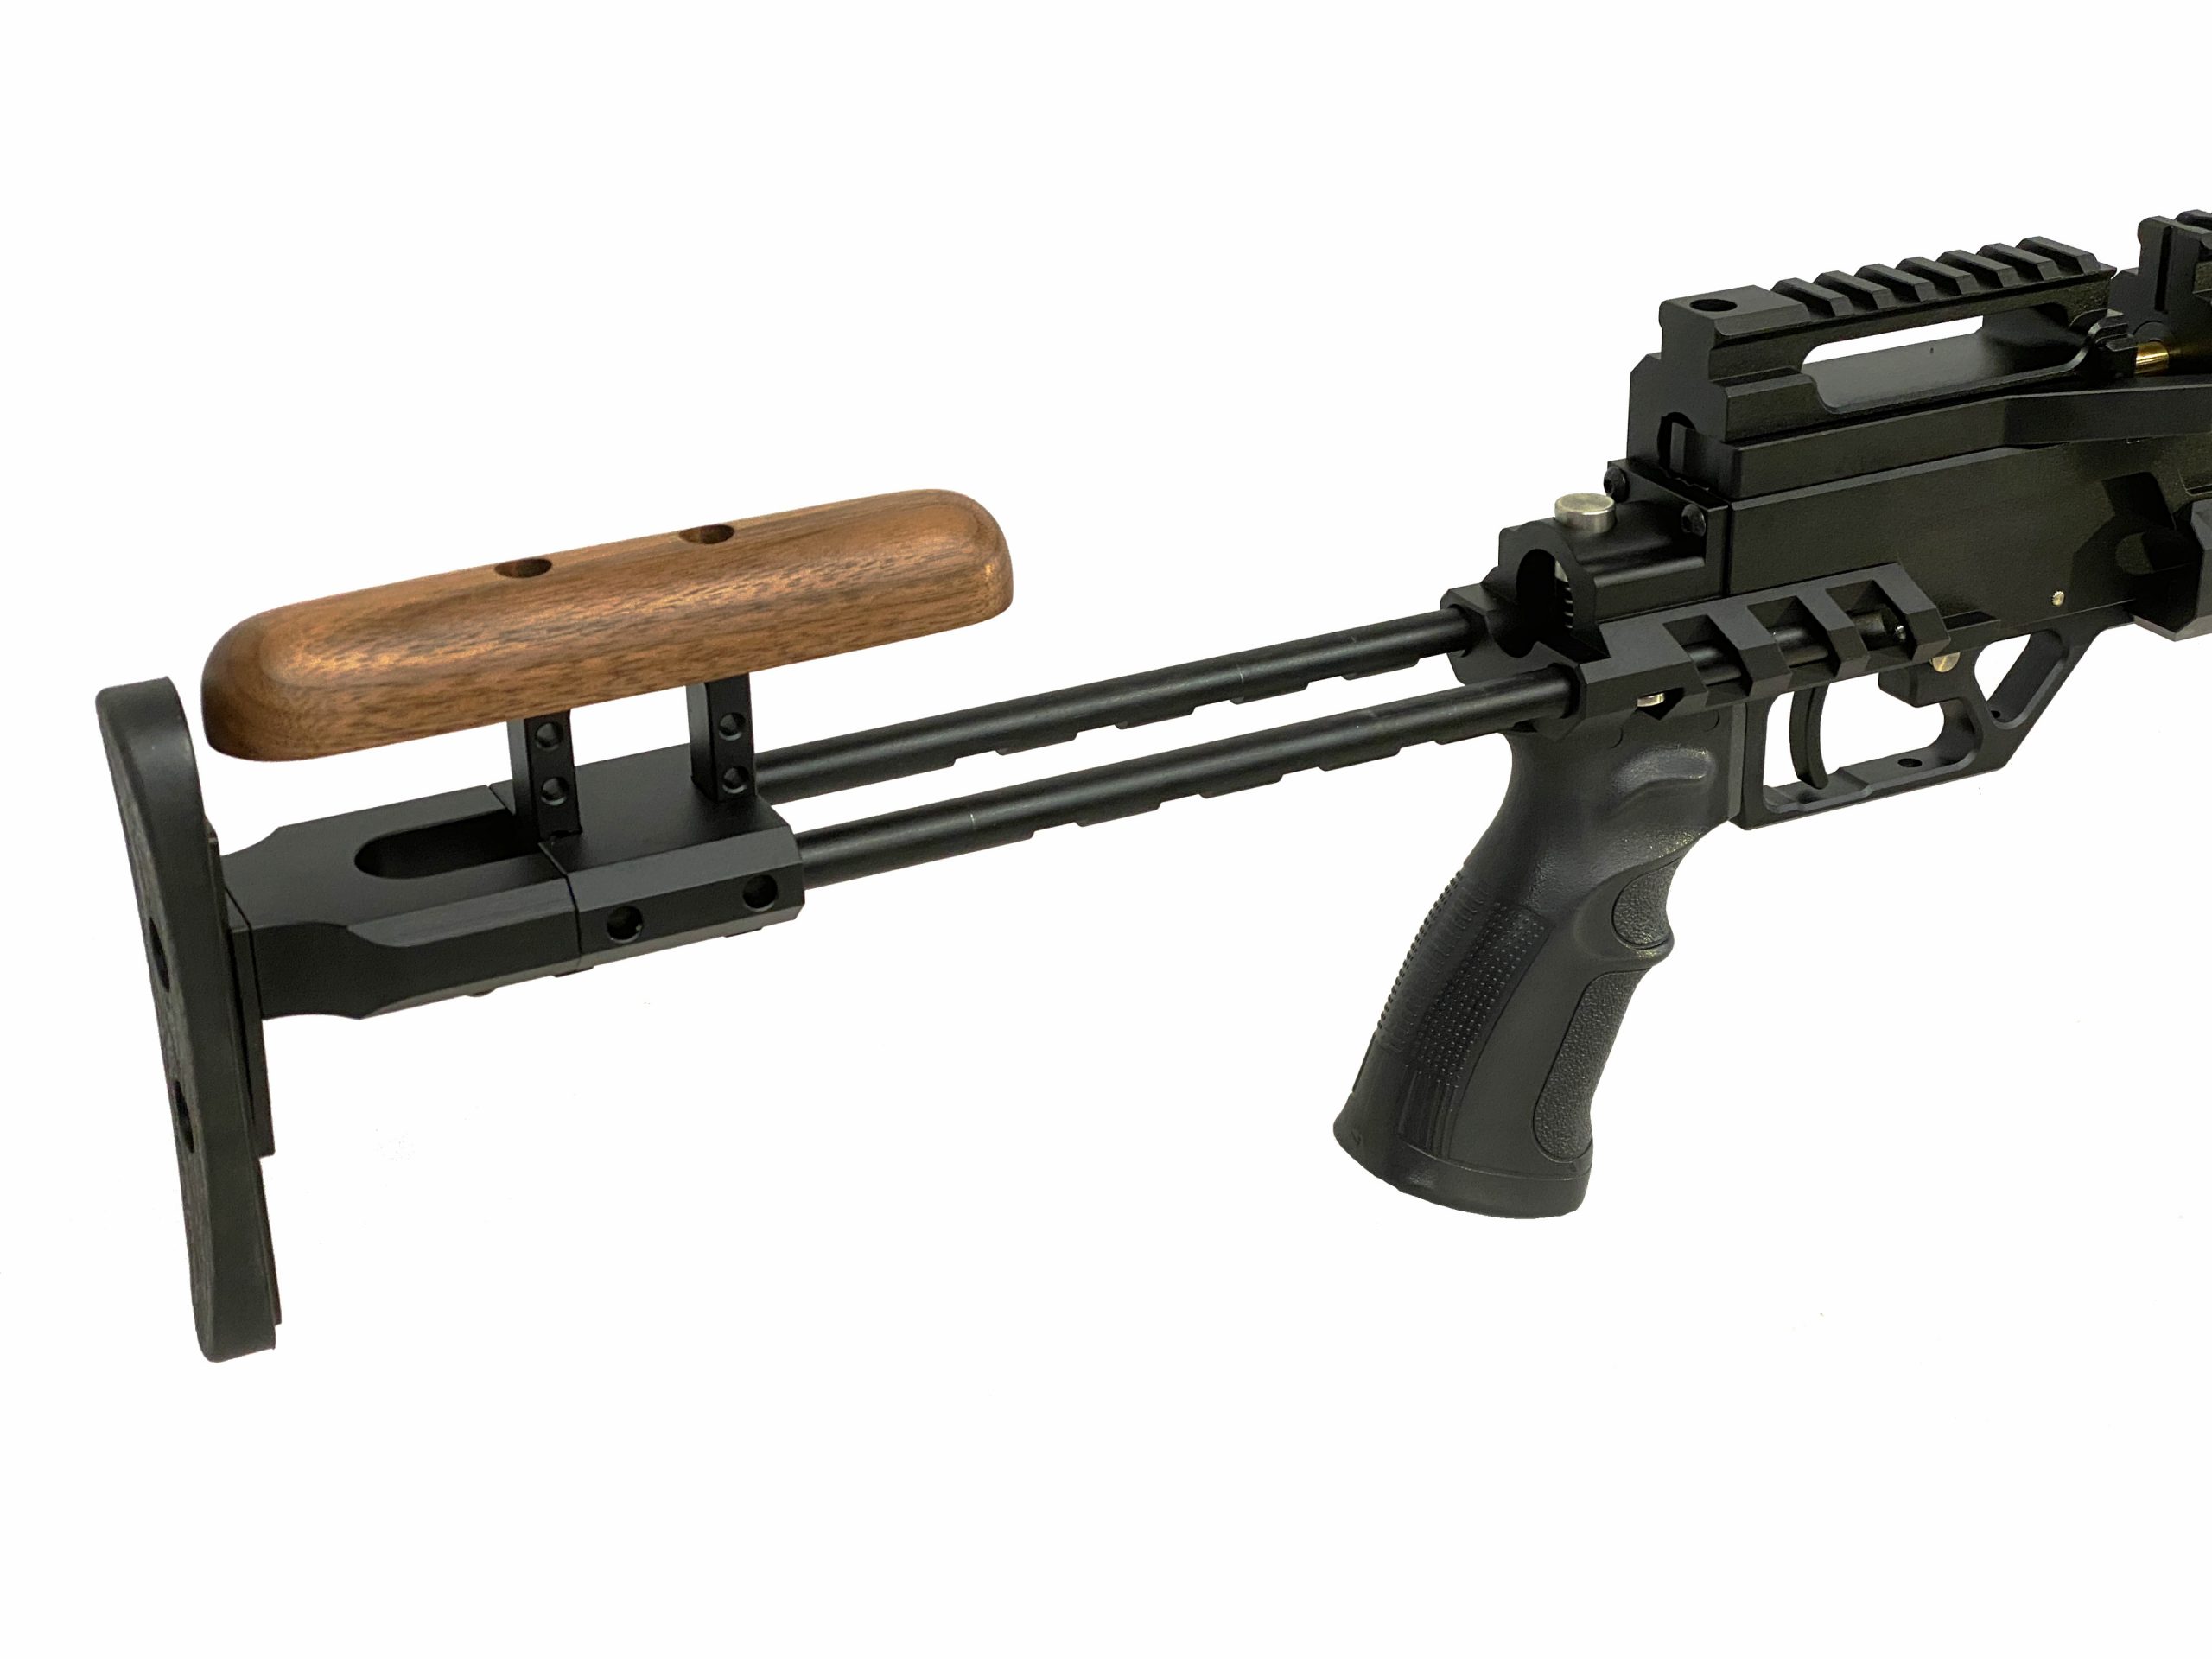 Evanix Sniper .50 - New England Airgun Inc